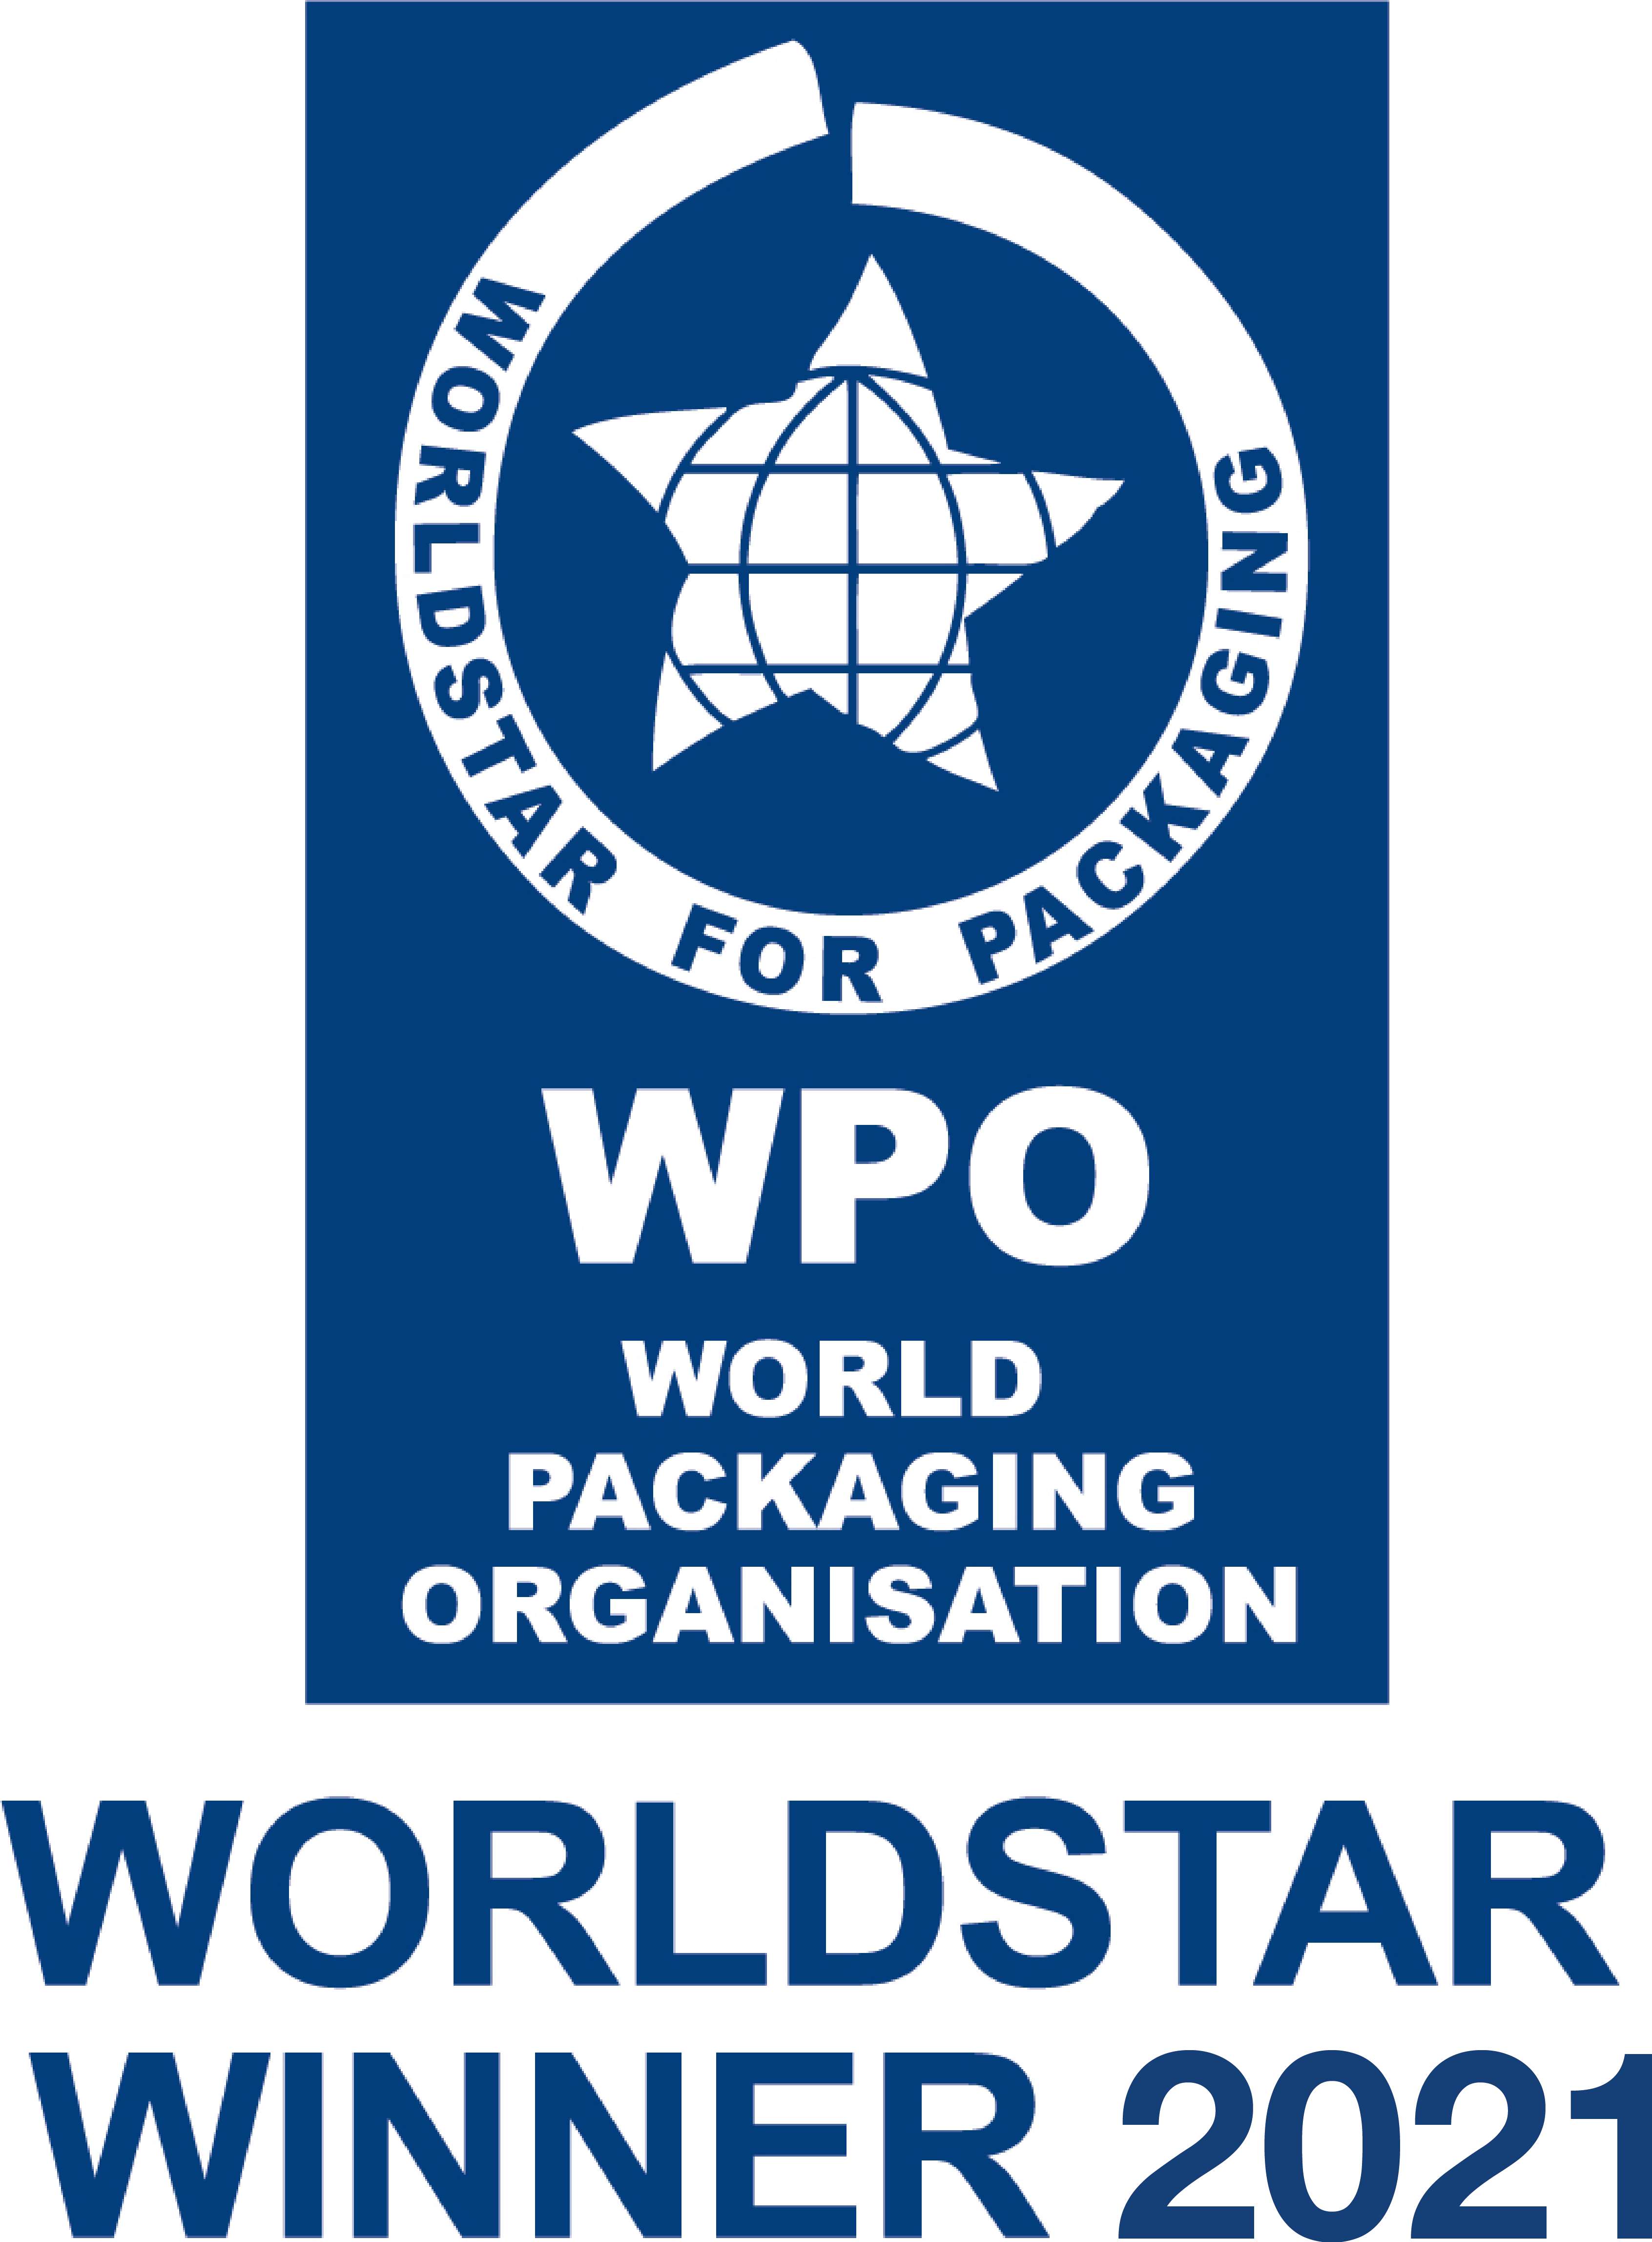 World Star Award 2021